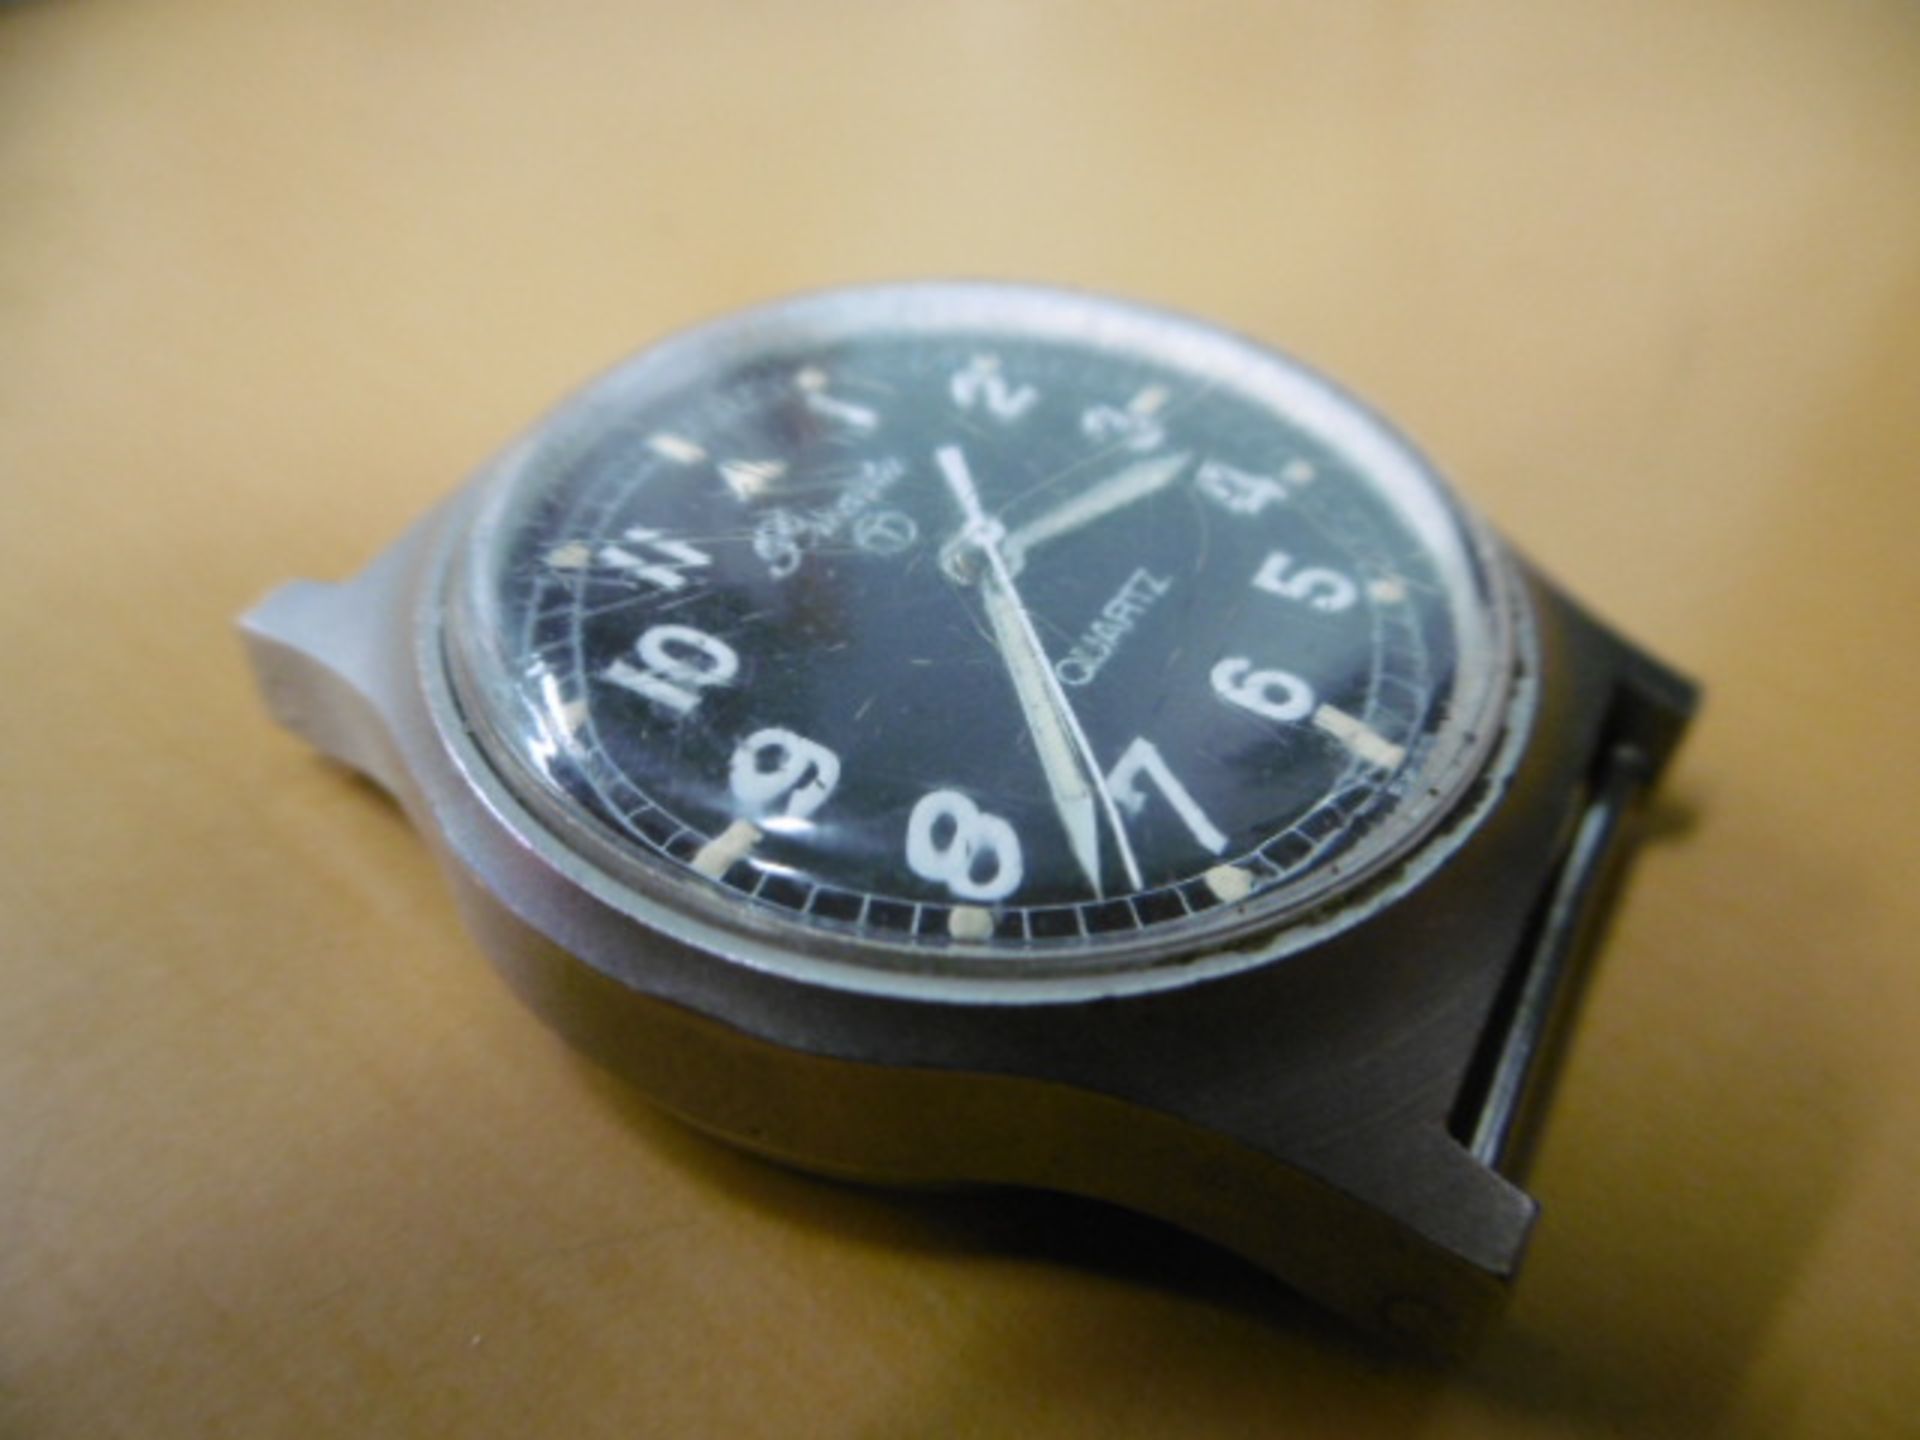 2 x Precista quartz wrist watches - Falklands Issue - Image 8 of 9